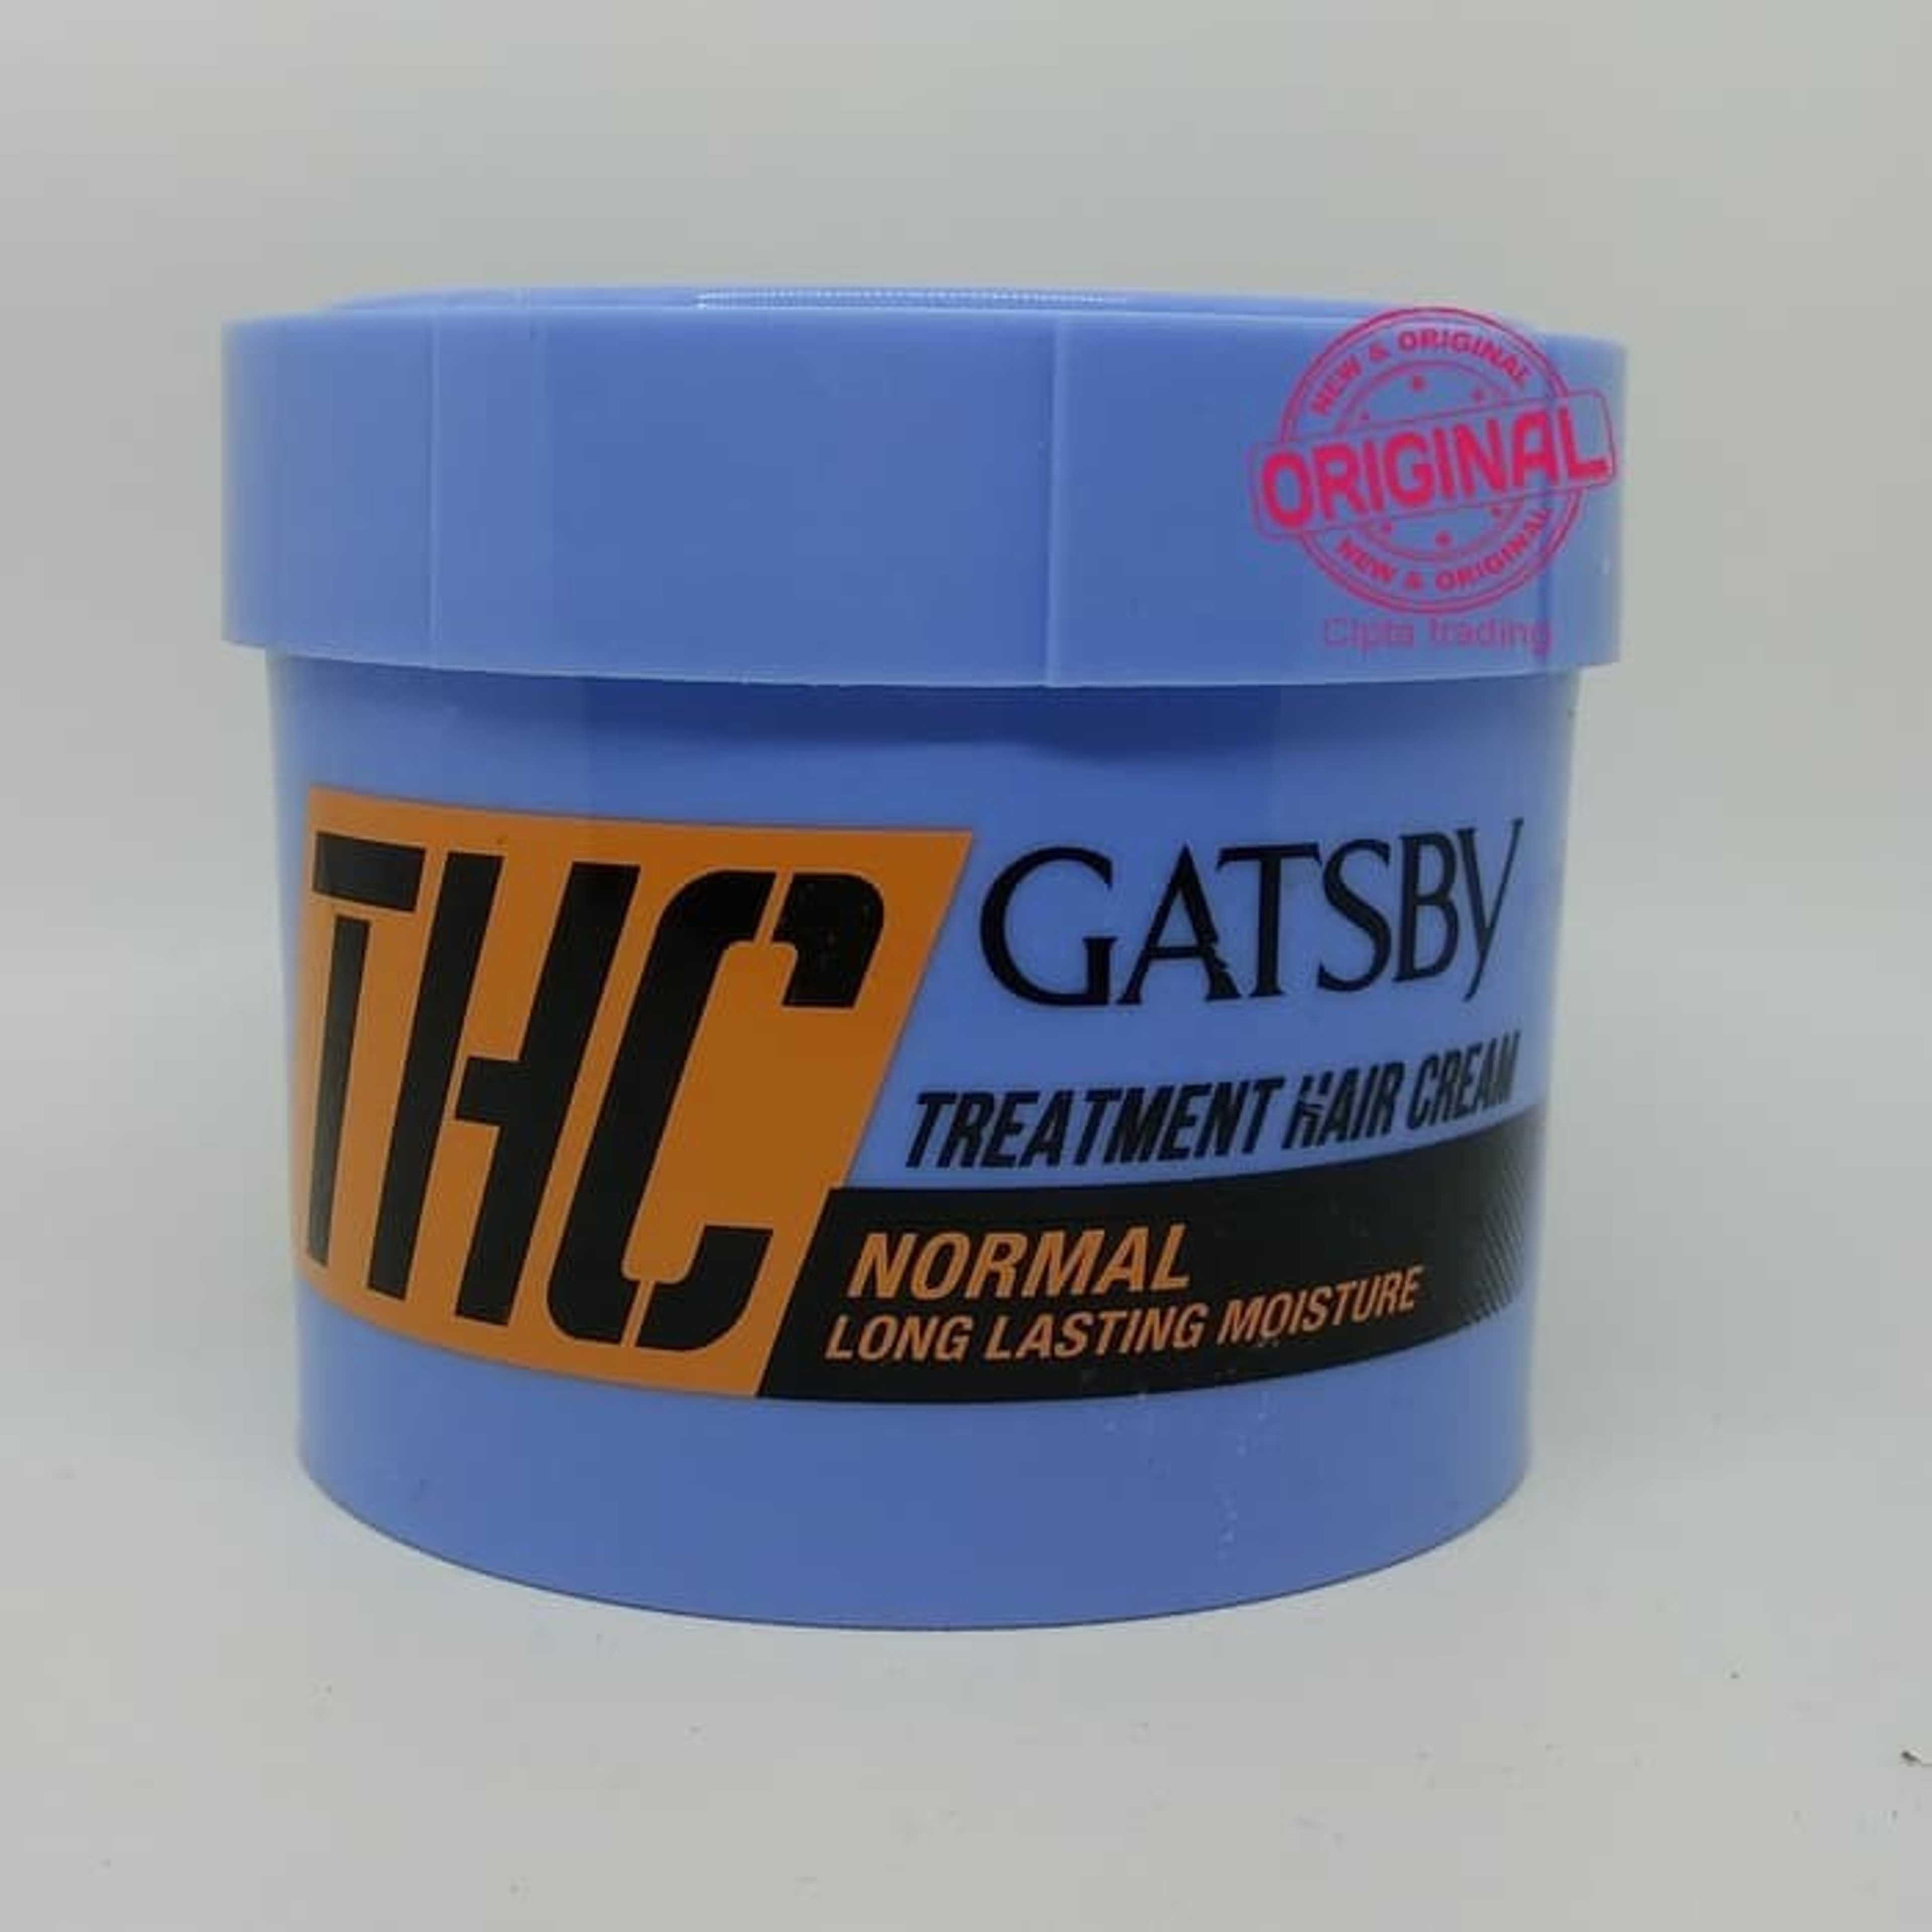 GATSB'Y TREATMENT HAIR CREAM NORMAL 250GM